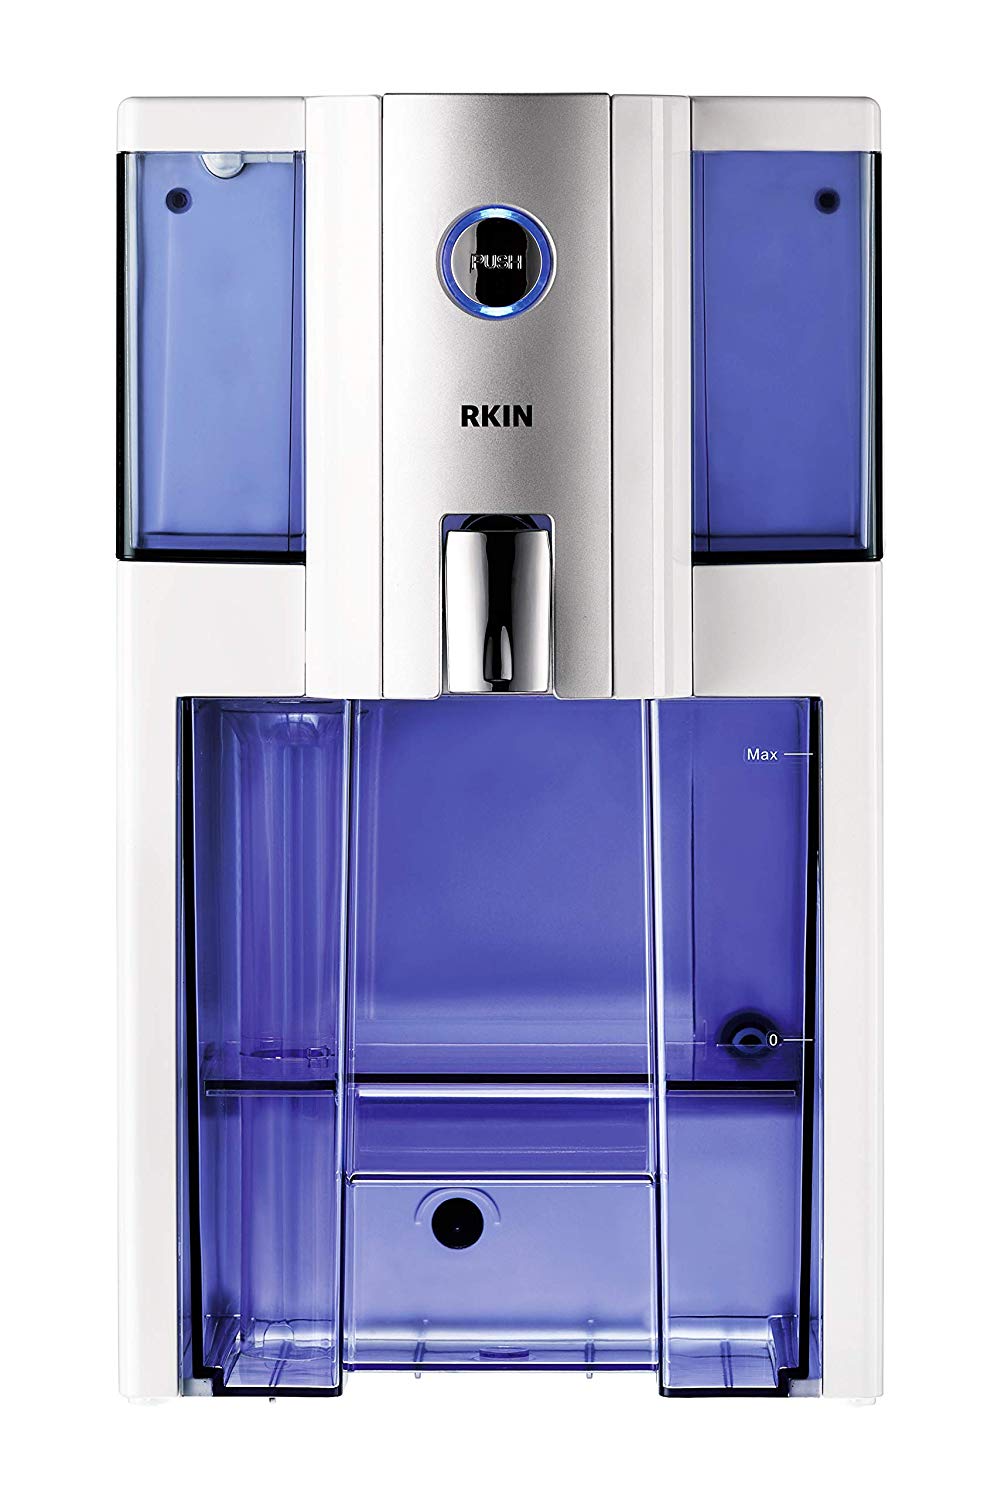 Rkin zero installation purifier